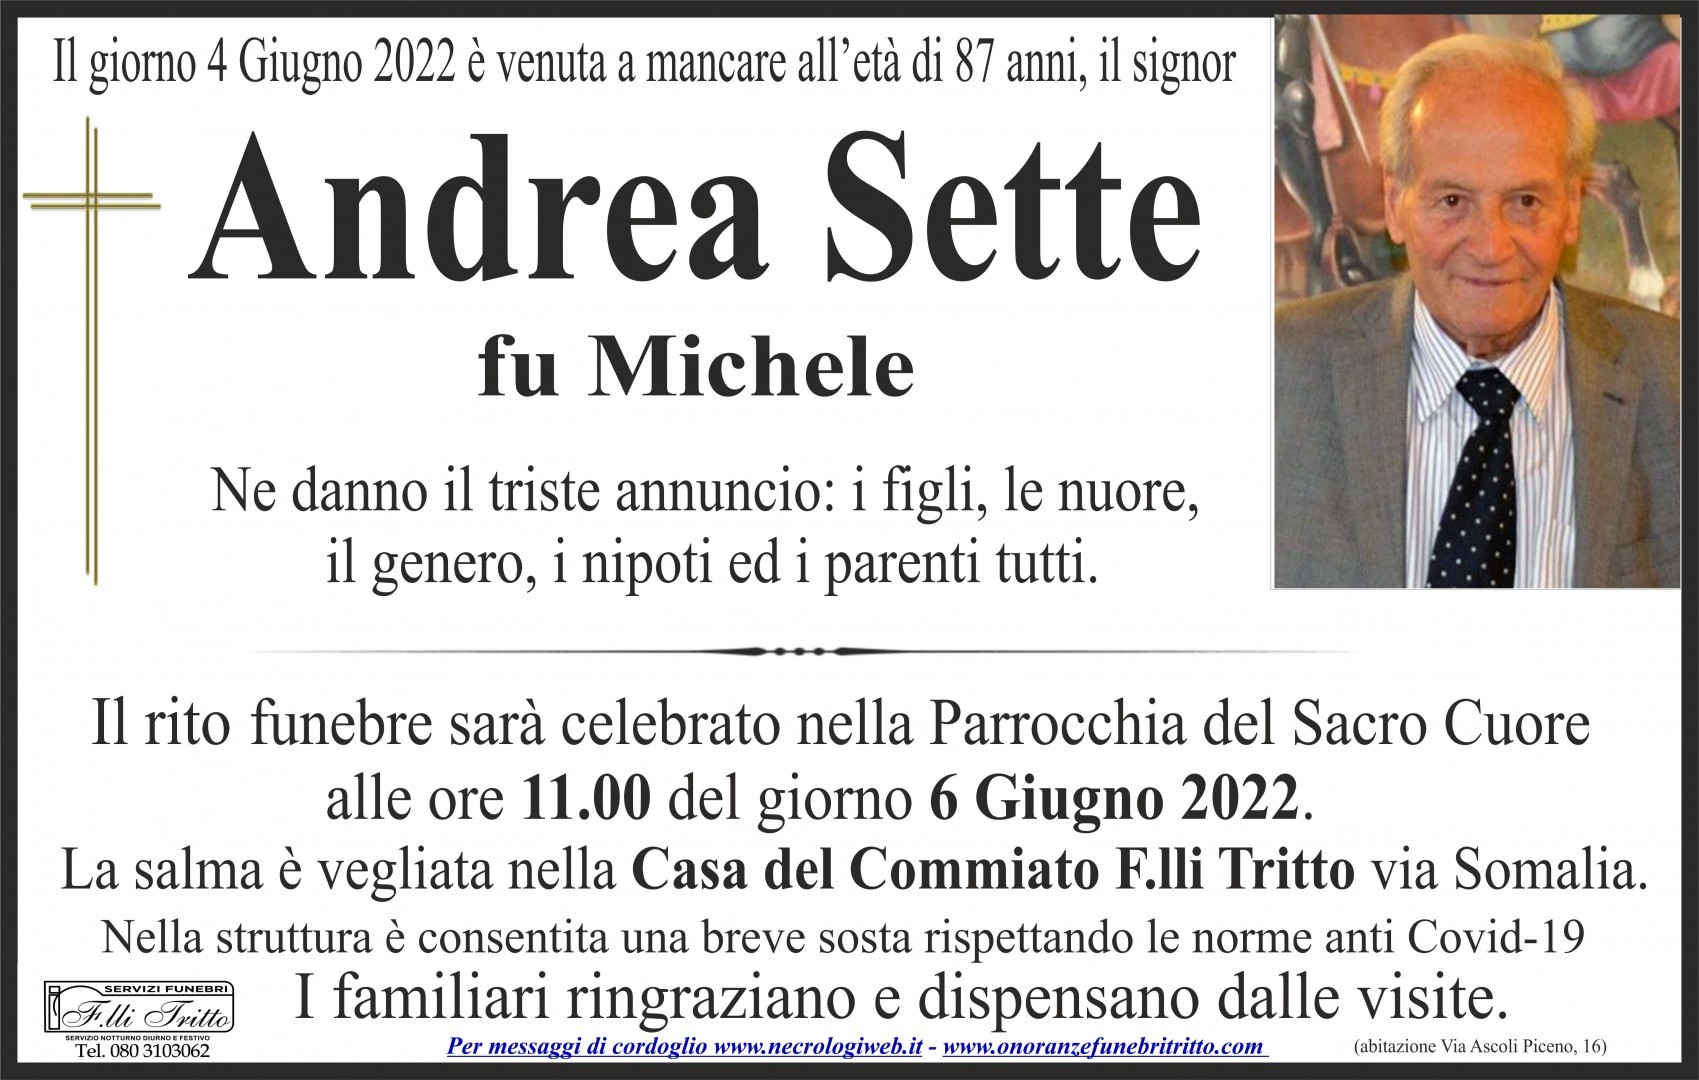 Andrea Sette